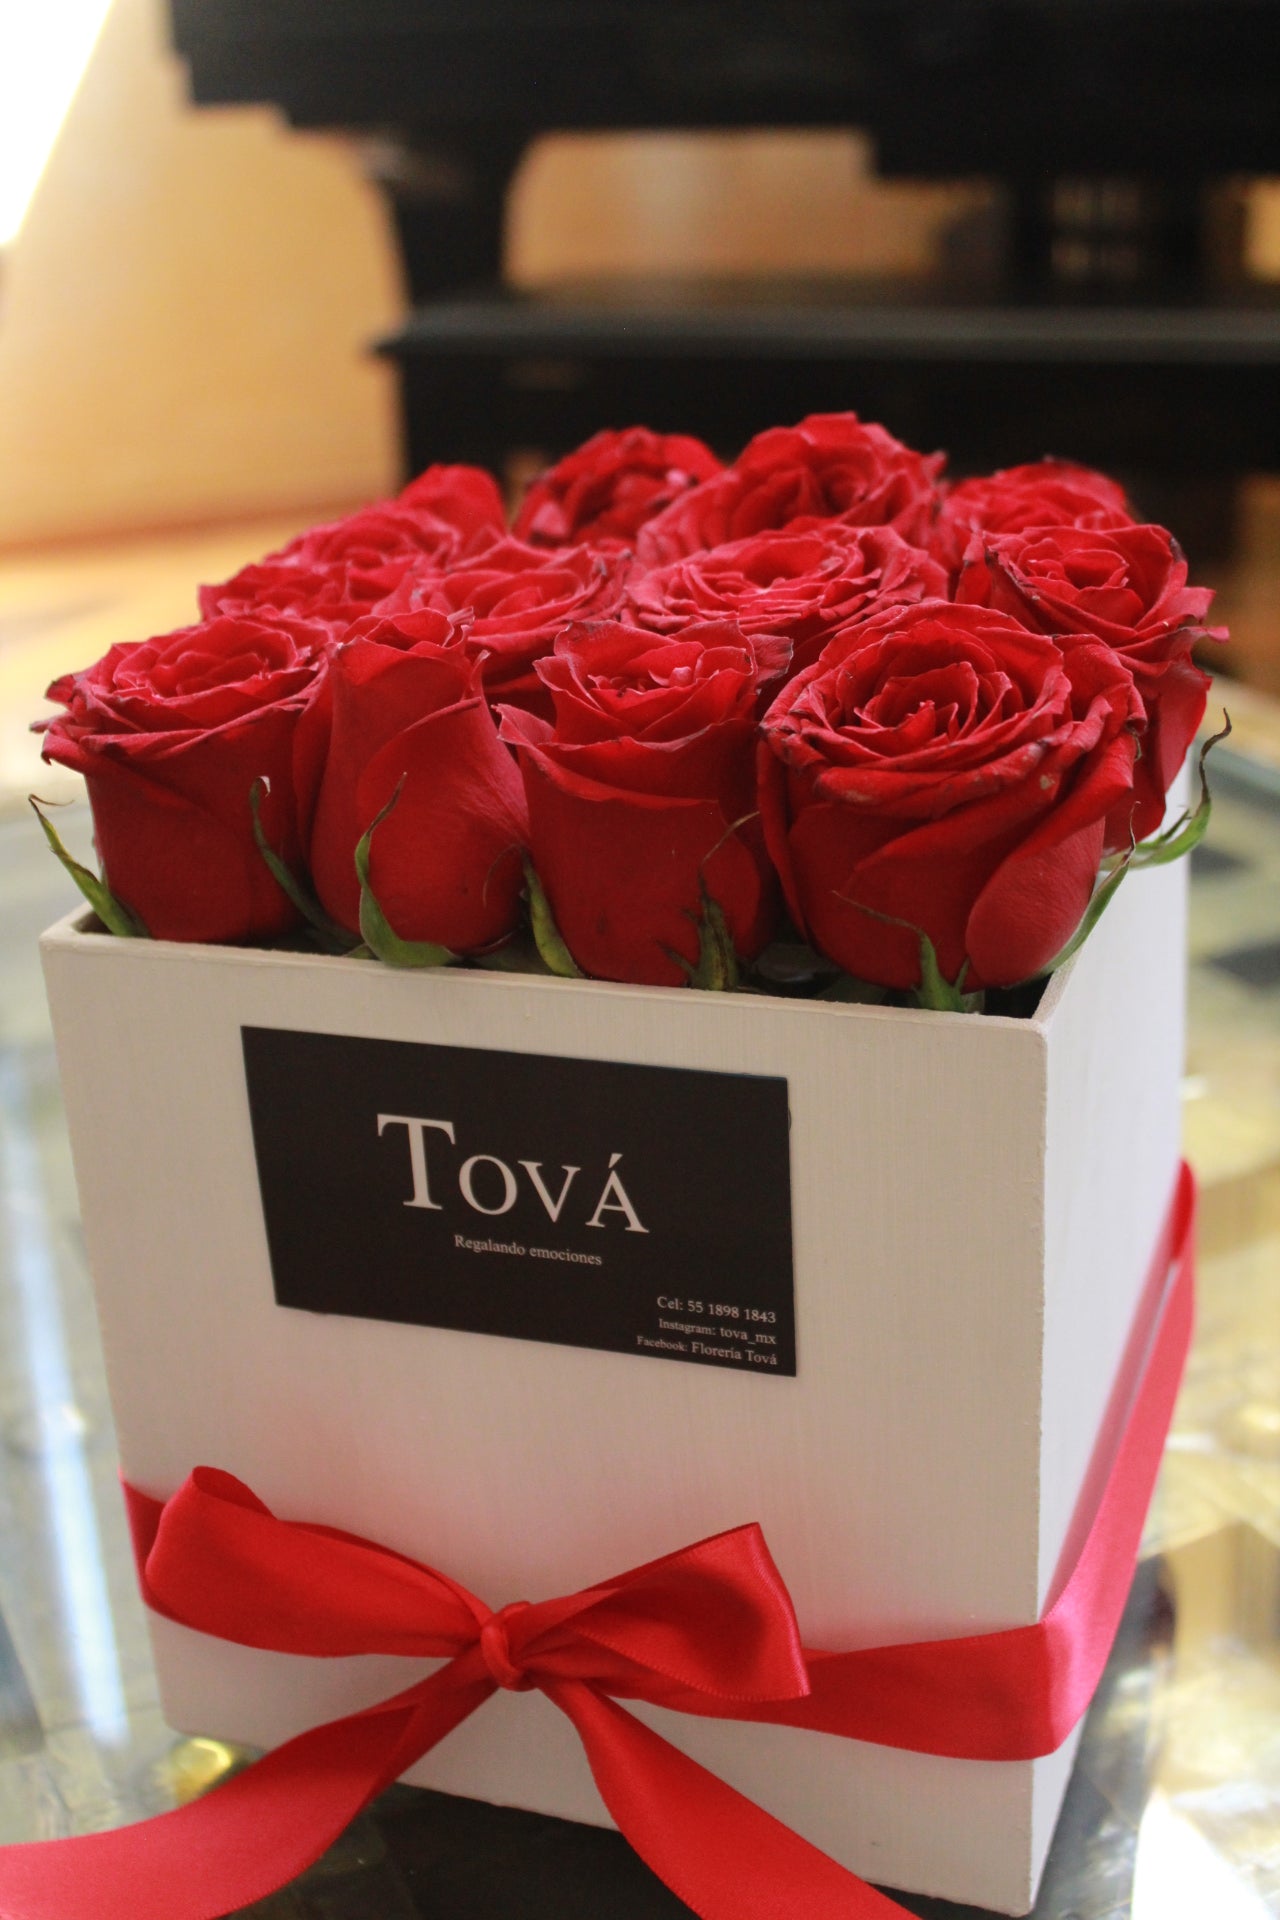 Una docena de rosas sobre caja de cartón rígido.